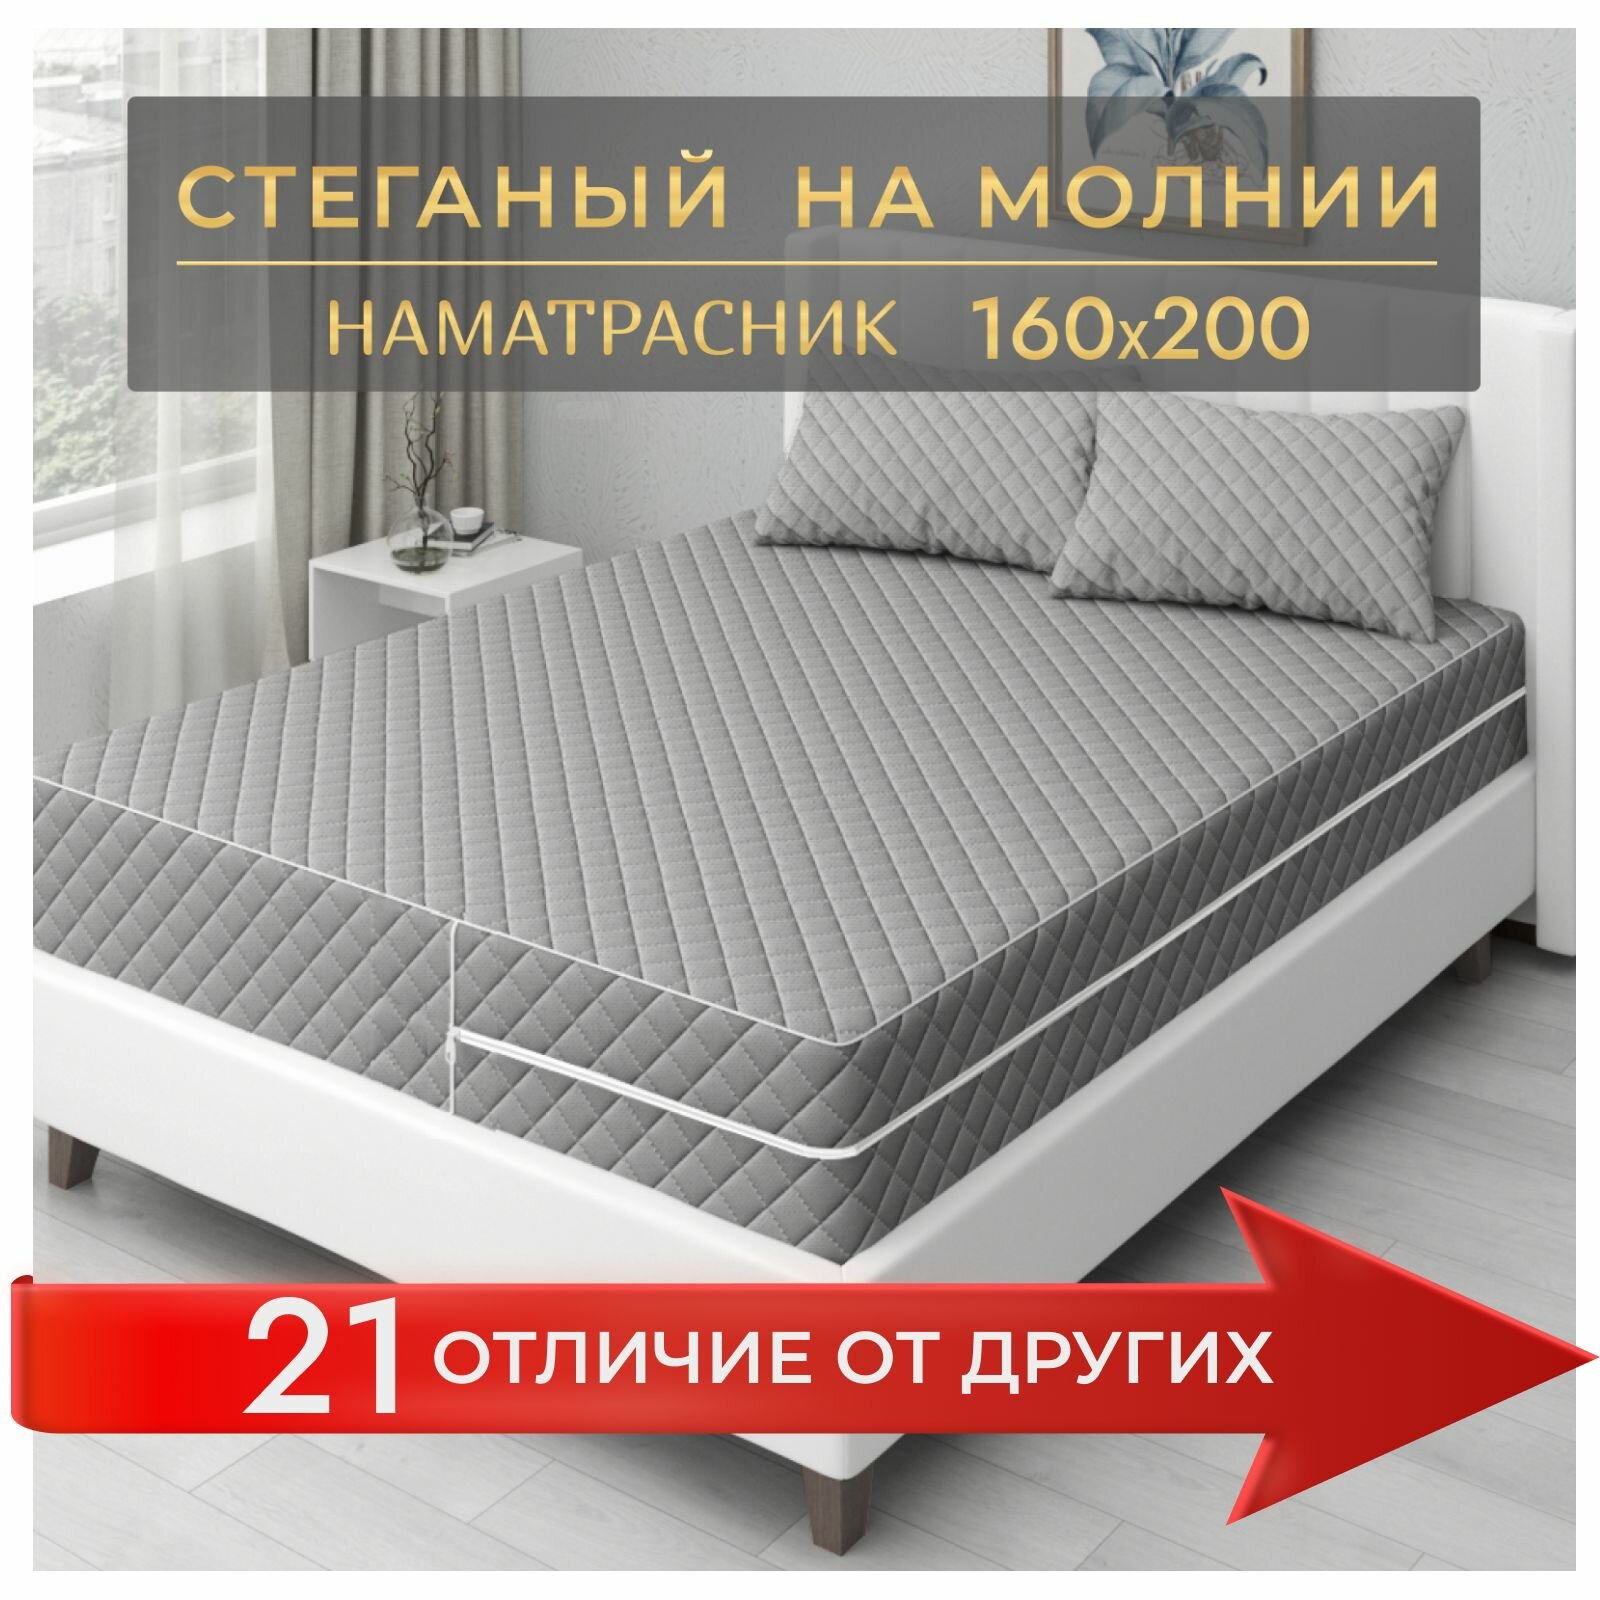 Наматрасник-чехол Экотория 160х200, с высокими бортиками 18-20 см, для двуспальной кровати, стеганый, на молнии, серый